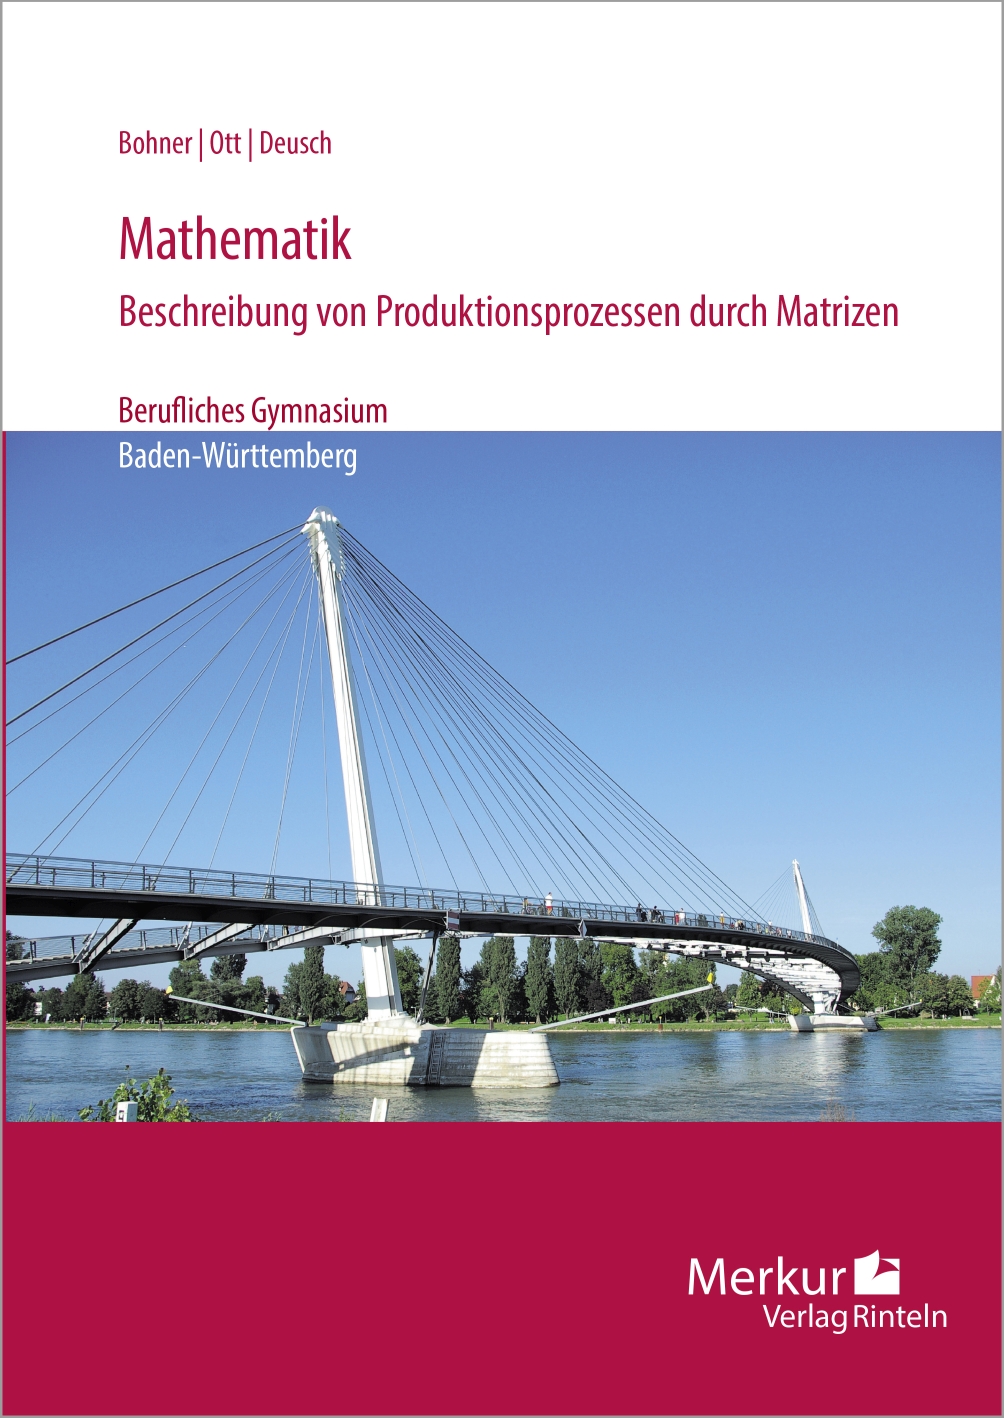 Mathematik - Beschreibung von Produktionsprozessen durch Matrizen - Berufliches Gymnasium